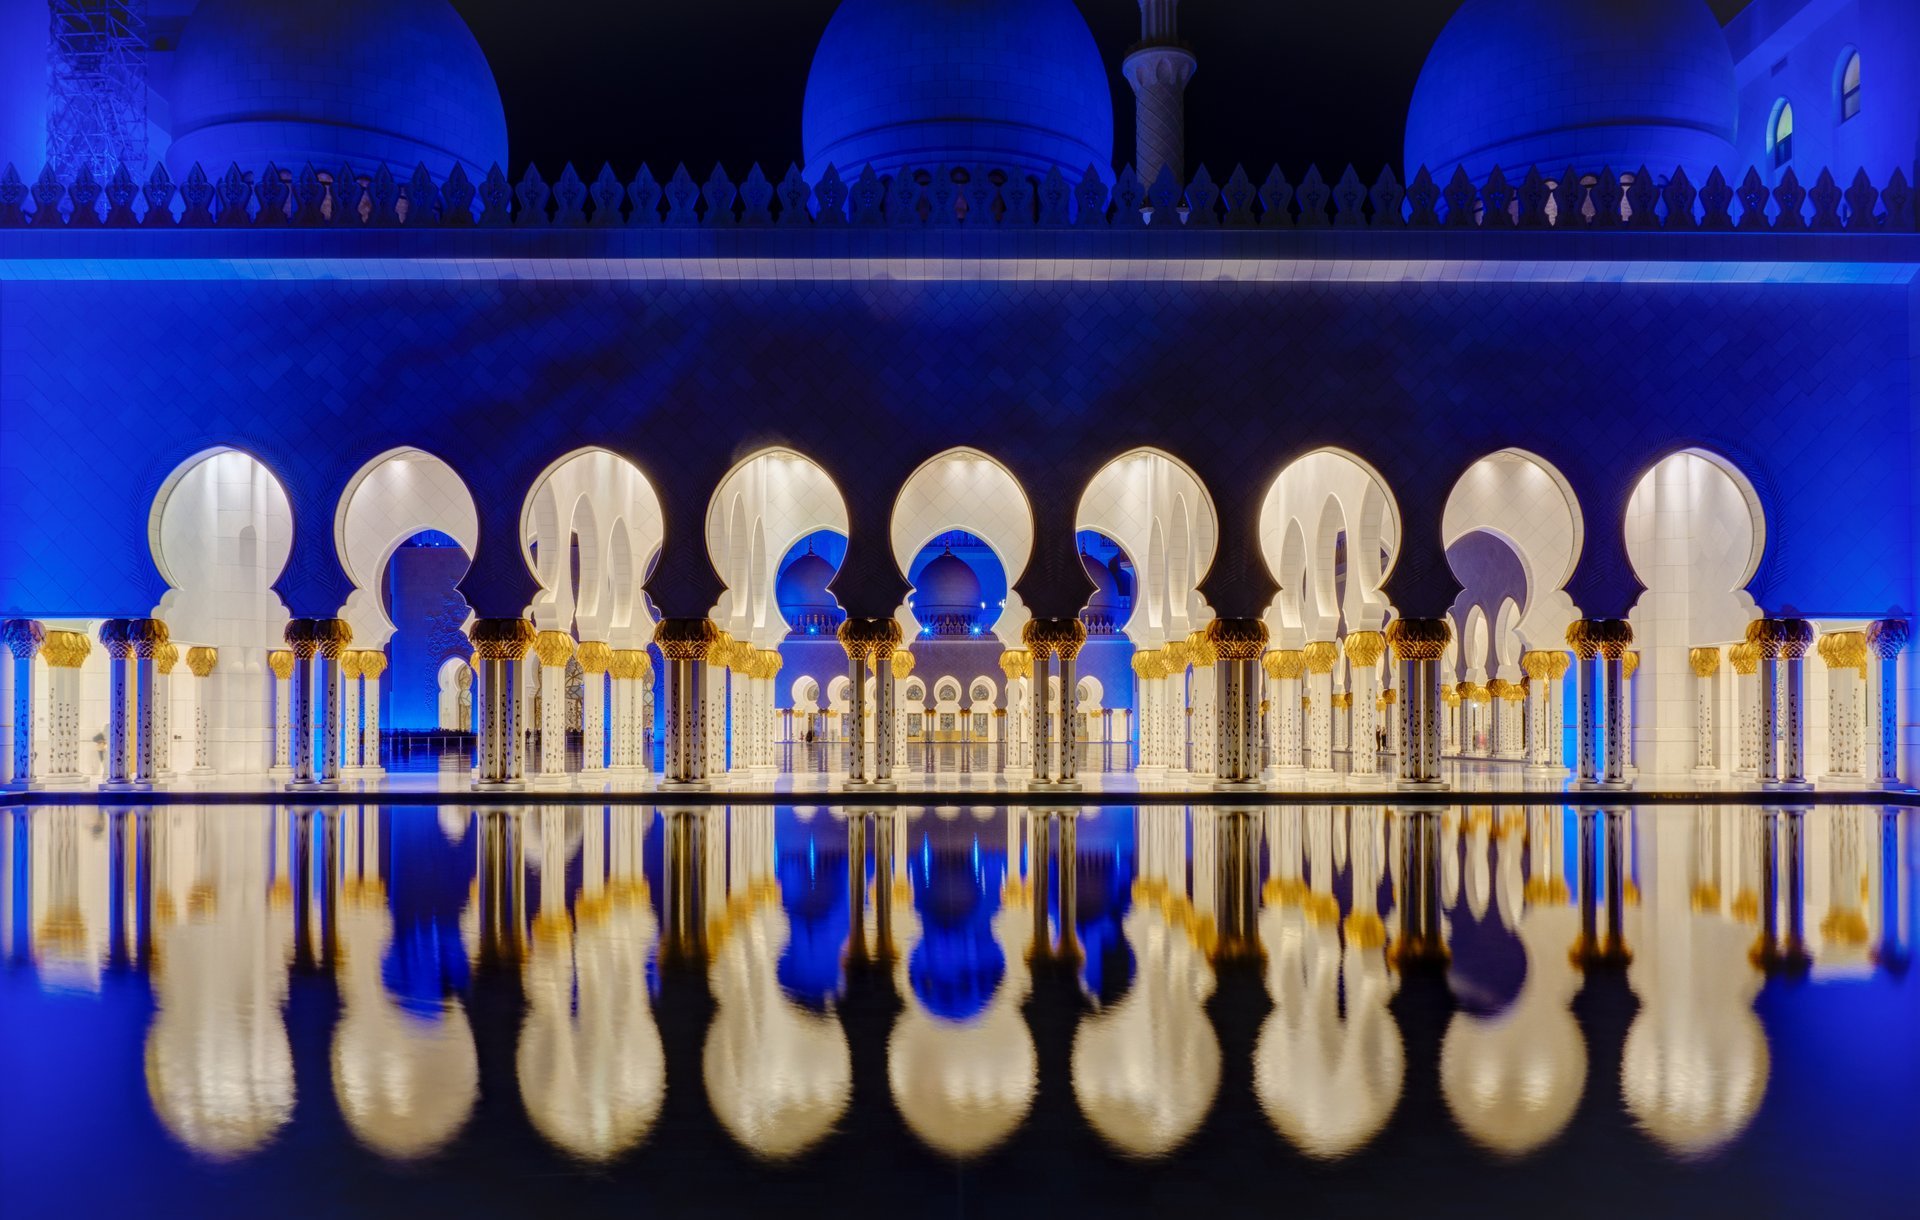 Sheikh Zayed Grande Moschea a Abu Dhabi